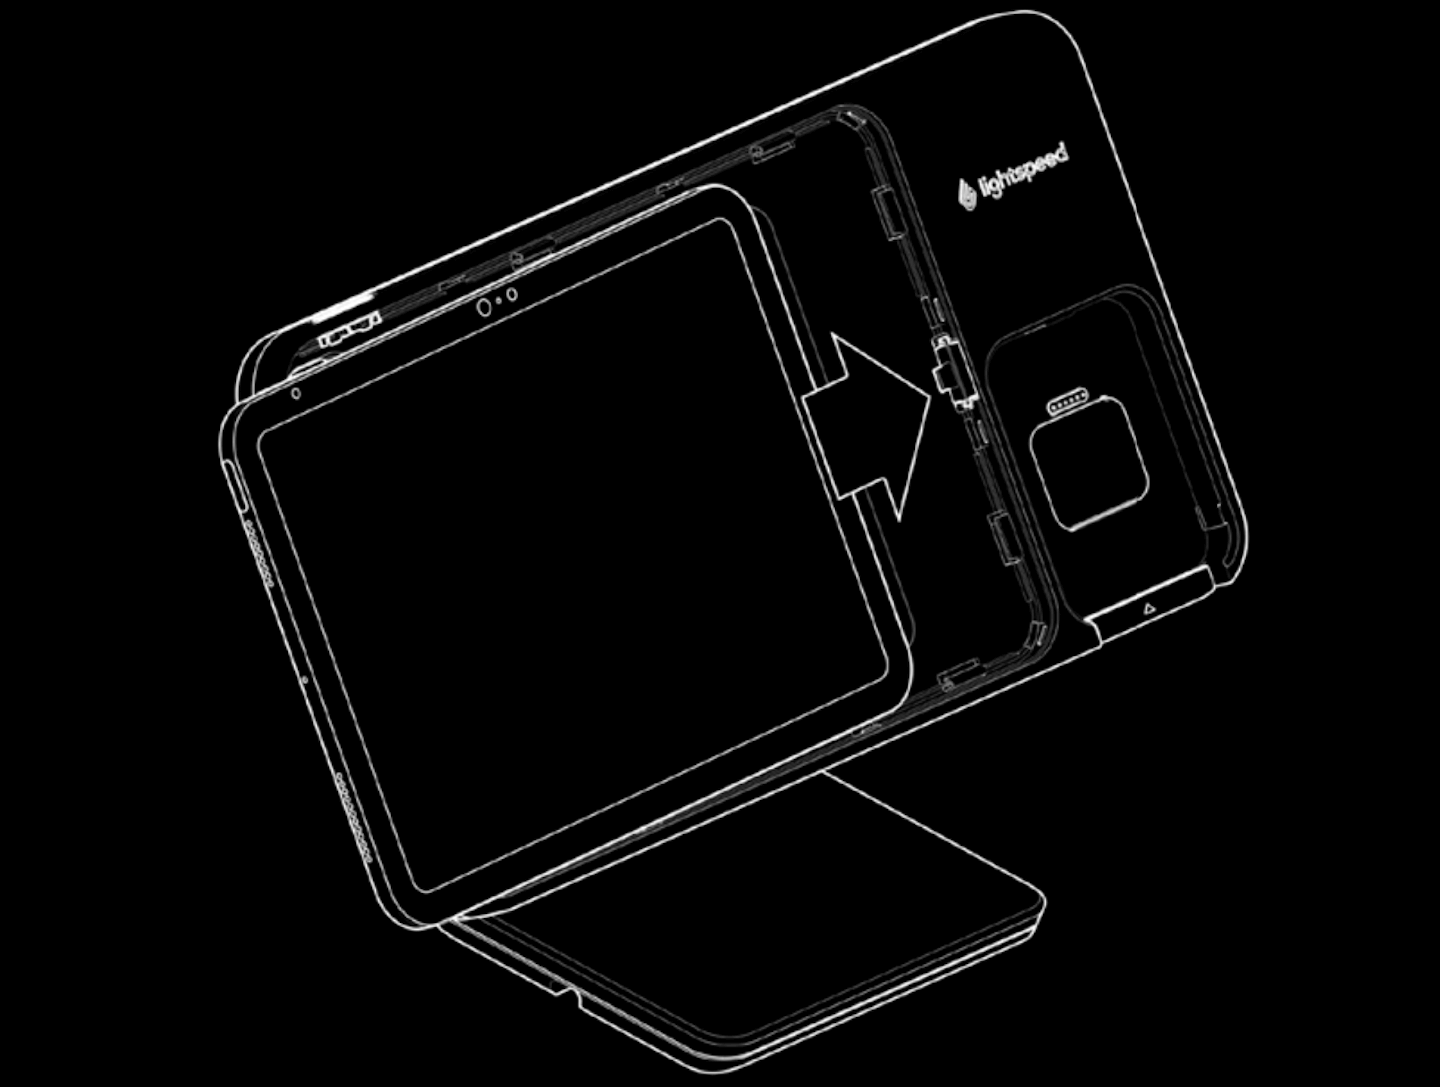 Afbeelding van een iPad die op de Lightspeed-standaard met betaaloptie wordt geplaatst. Met een pijl wordt aangegeven dat de iPad naar rechts in de standaard wordt geschoven.